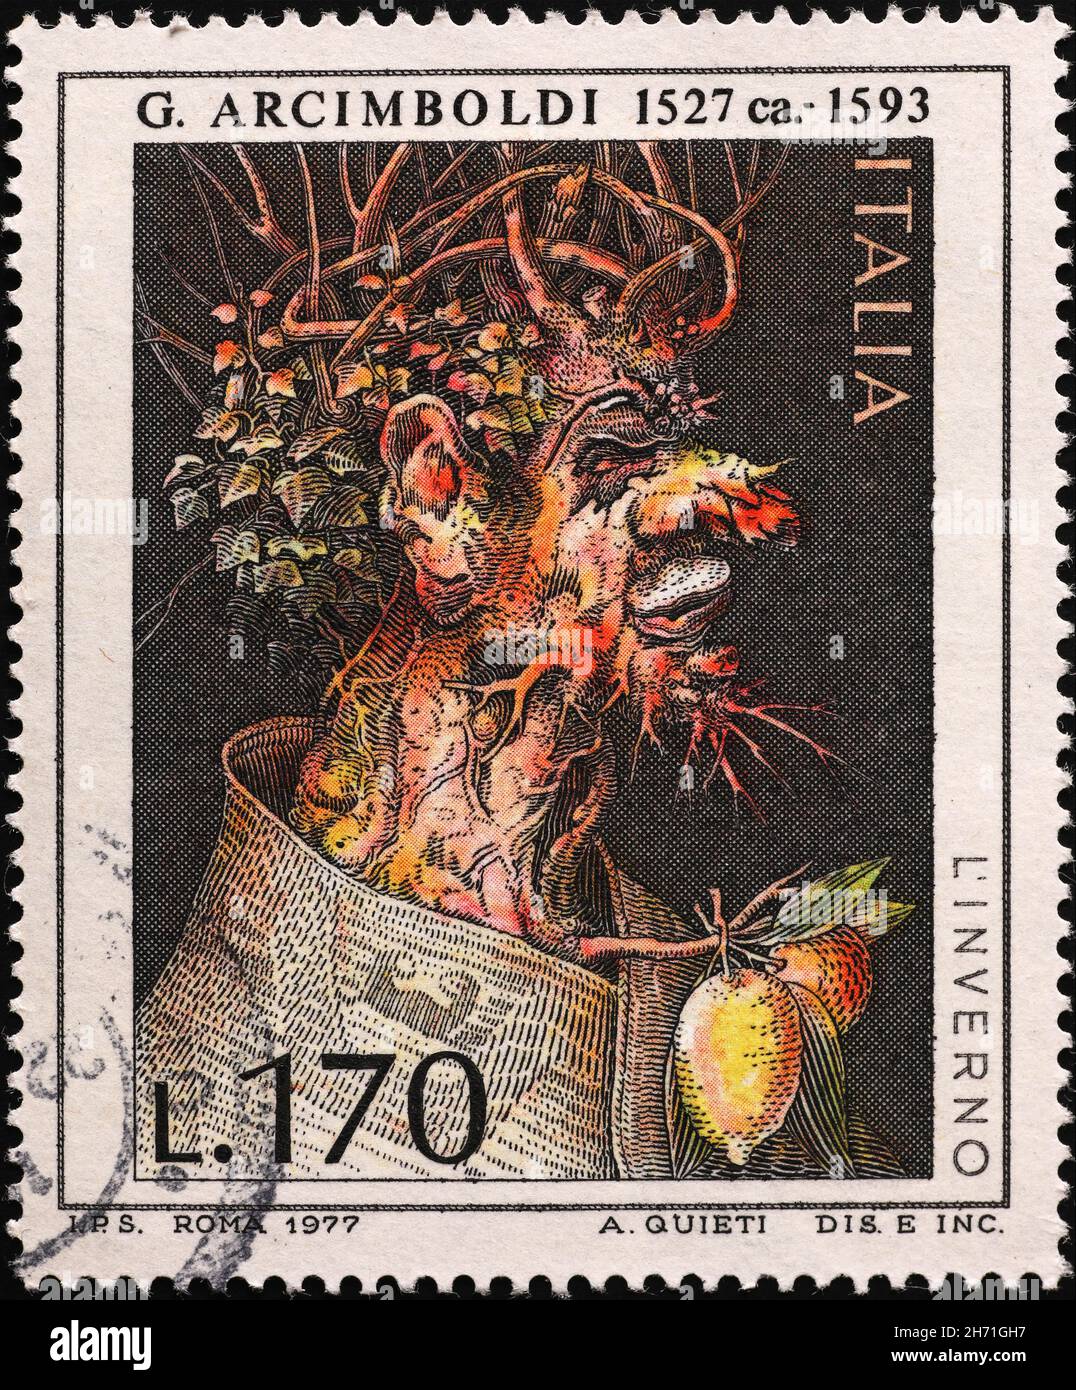 Peinture de Giuseppe Arcimboldo sur timbre-poste italien Banque D'Images